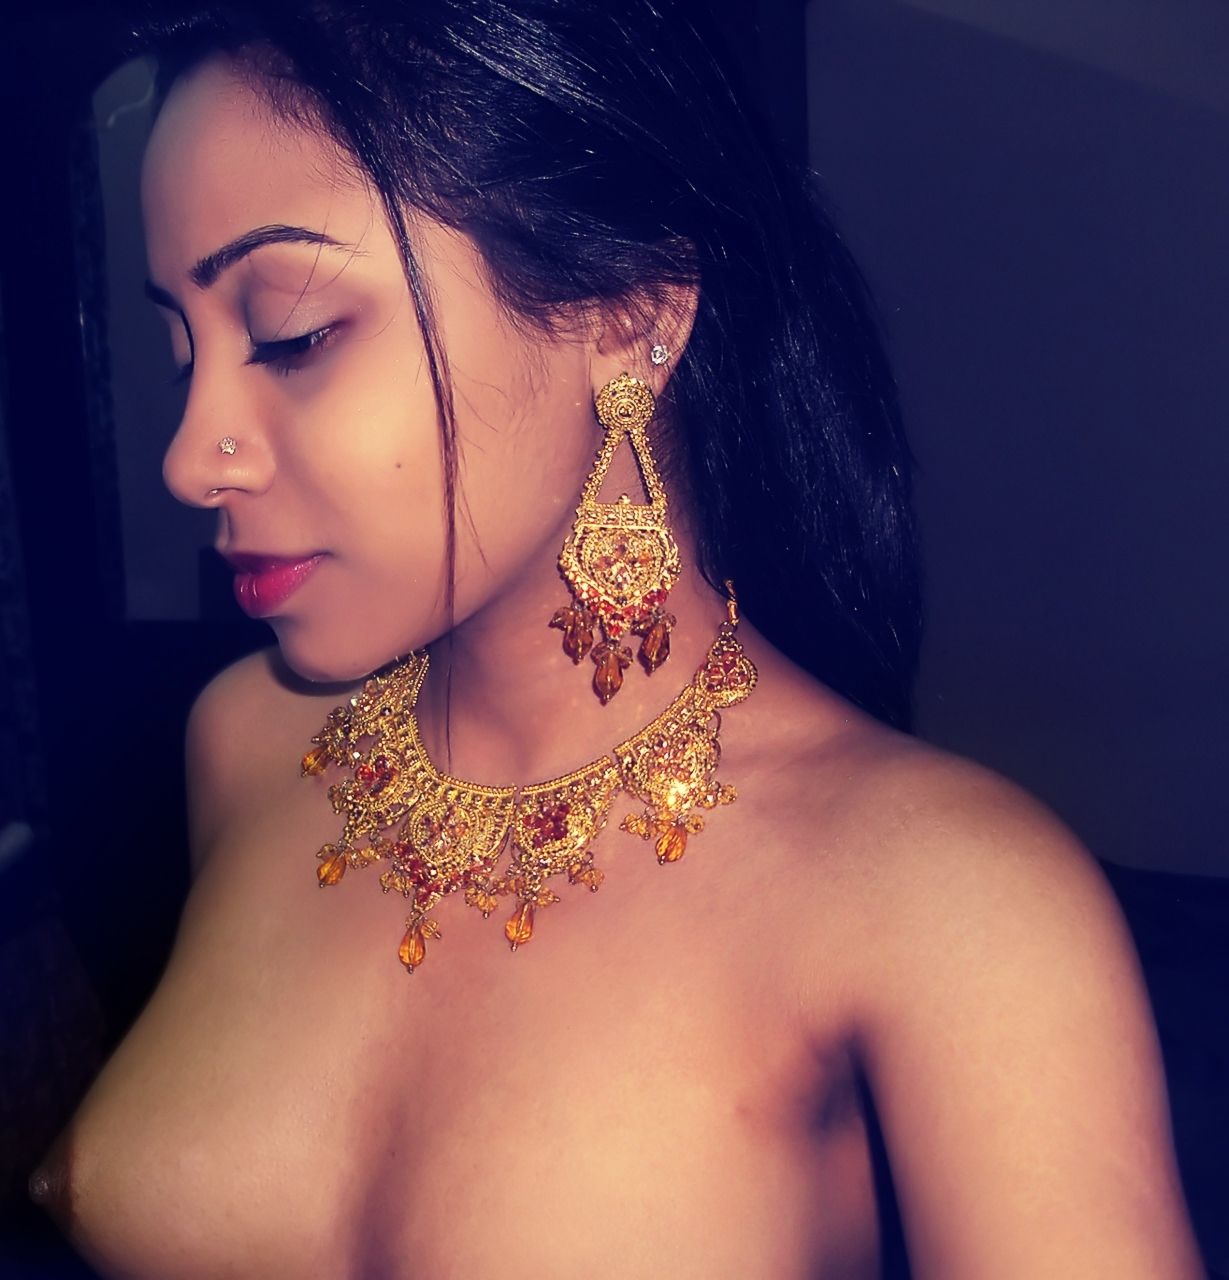 Body erotic jewelry